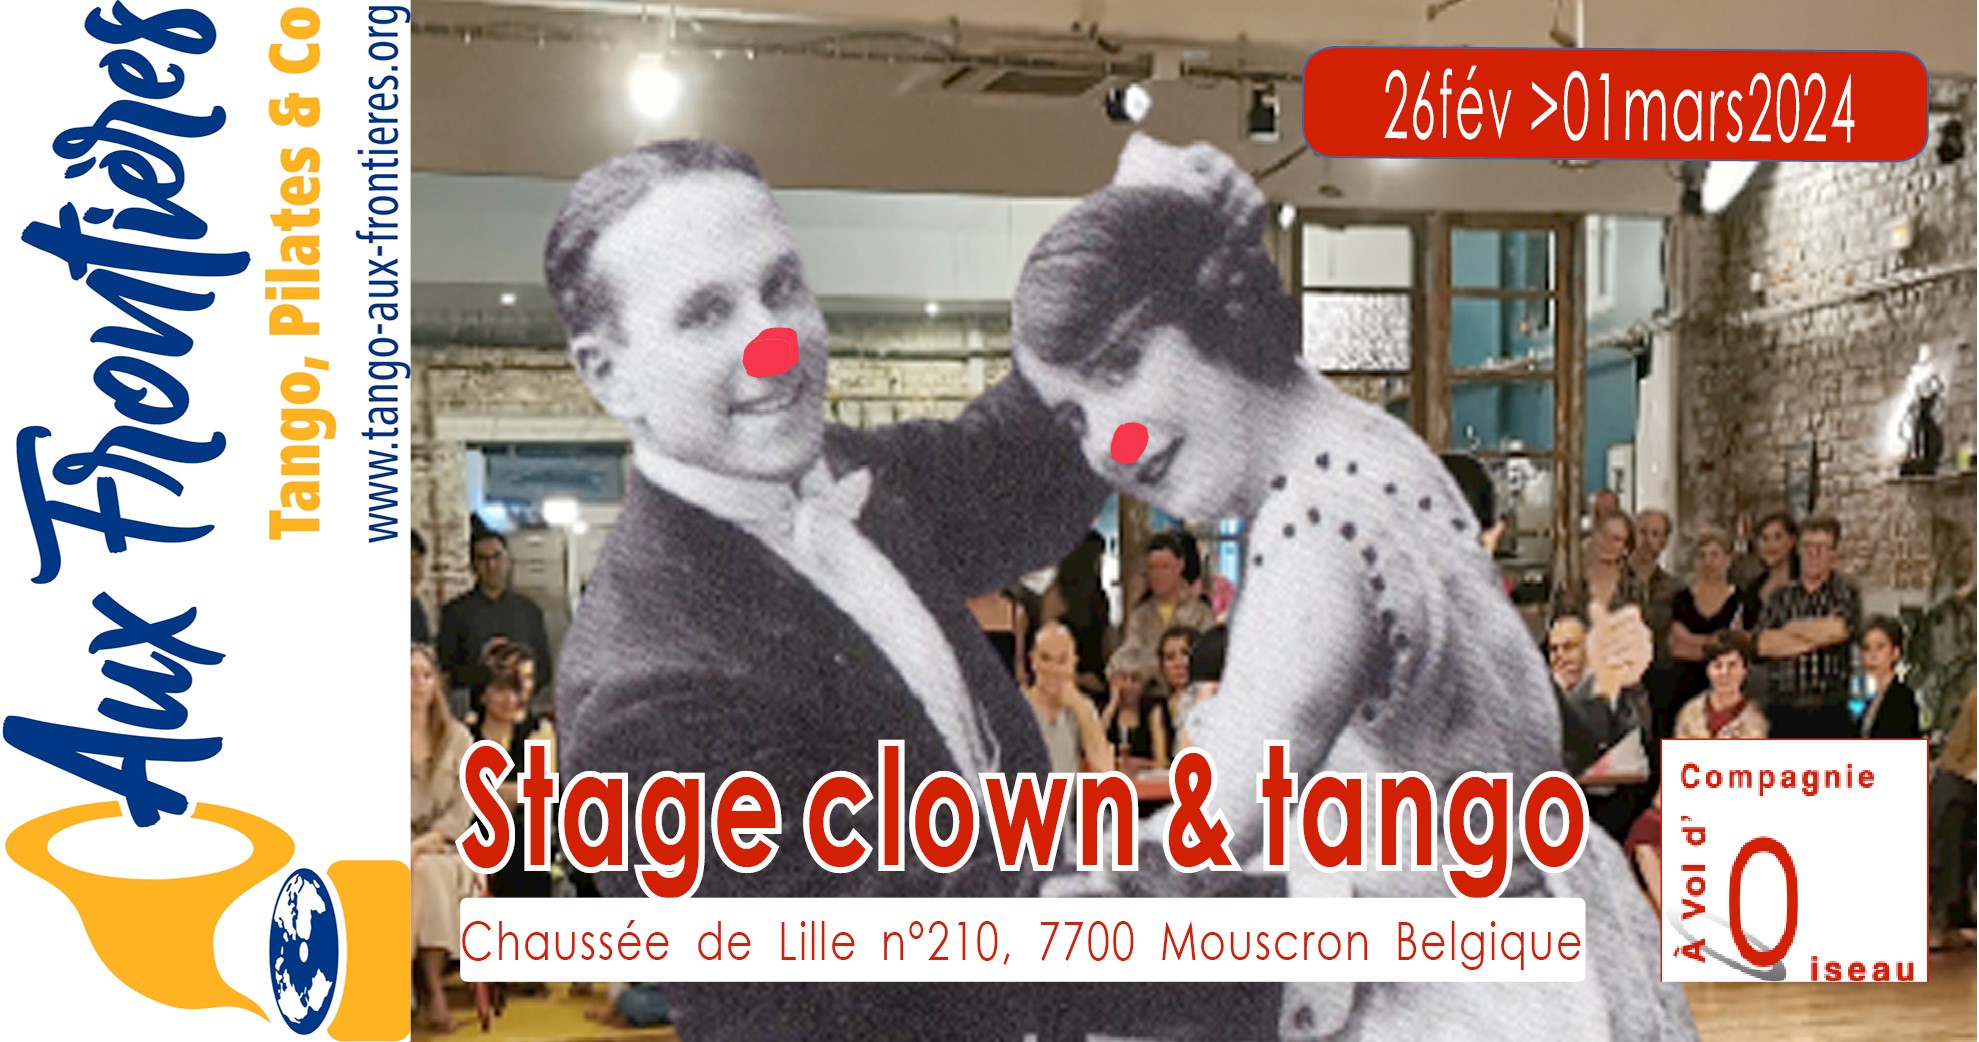 Clown et Tango (du 26fév au 1mars 2024)